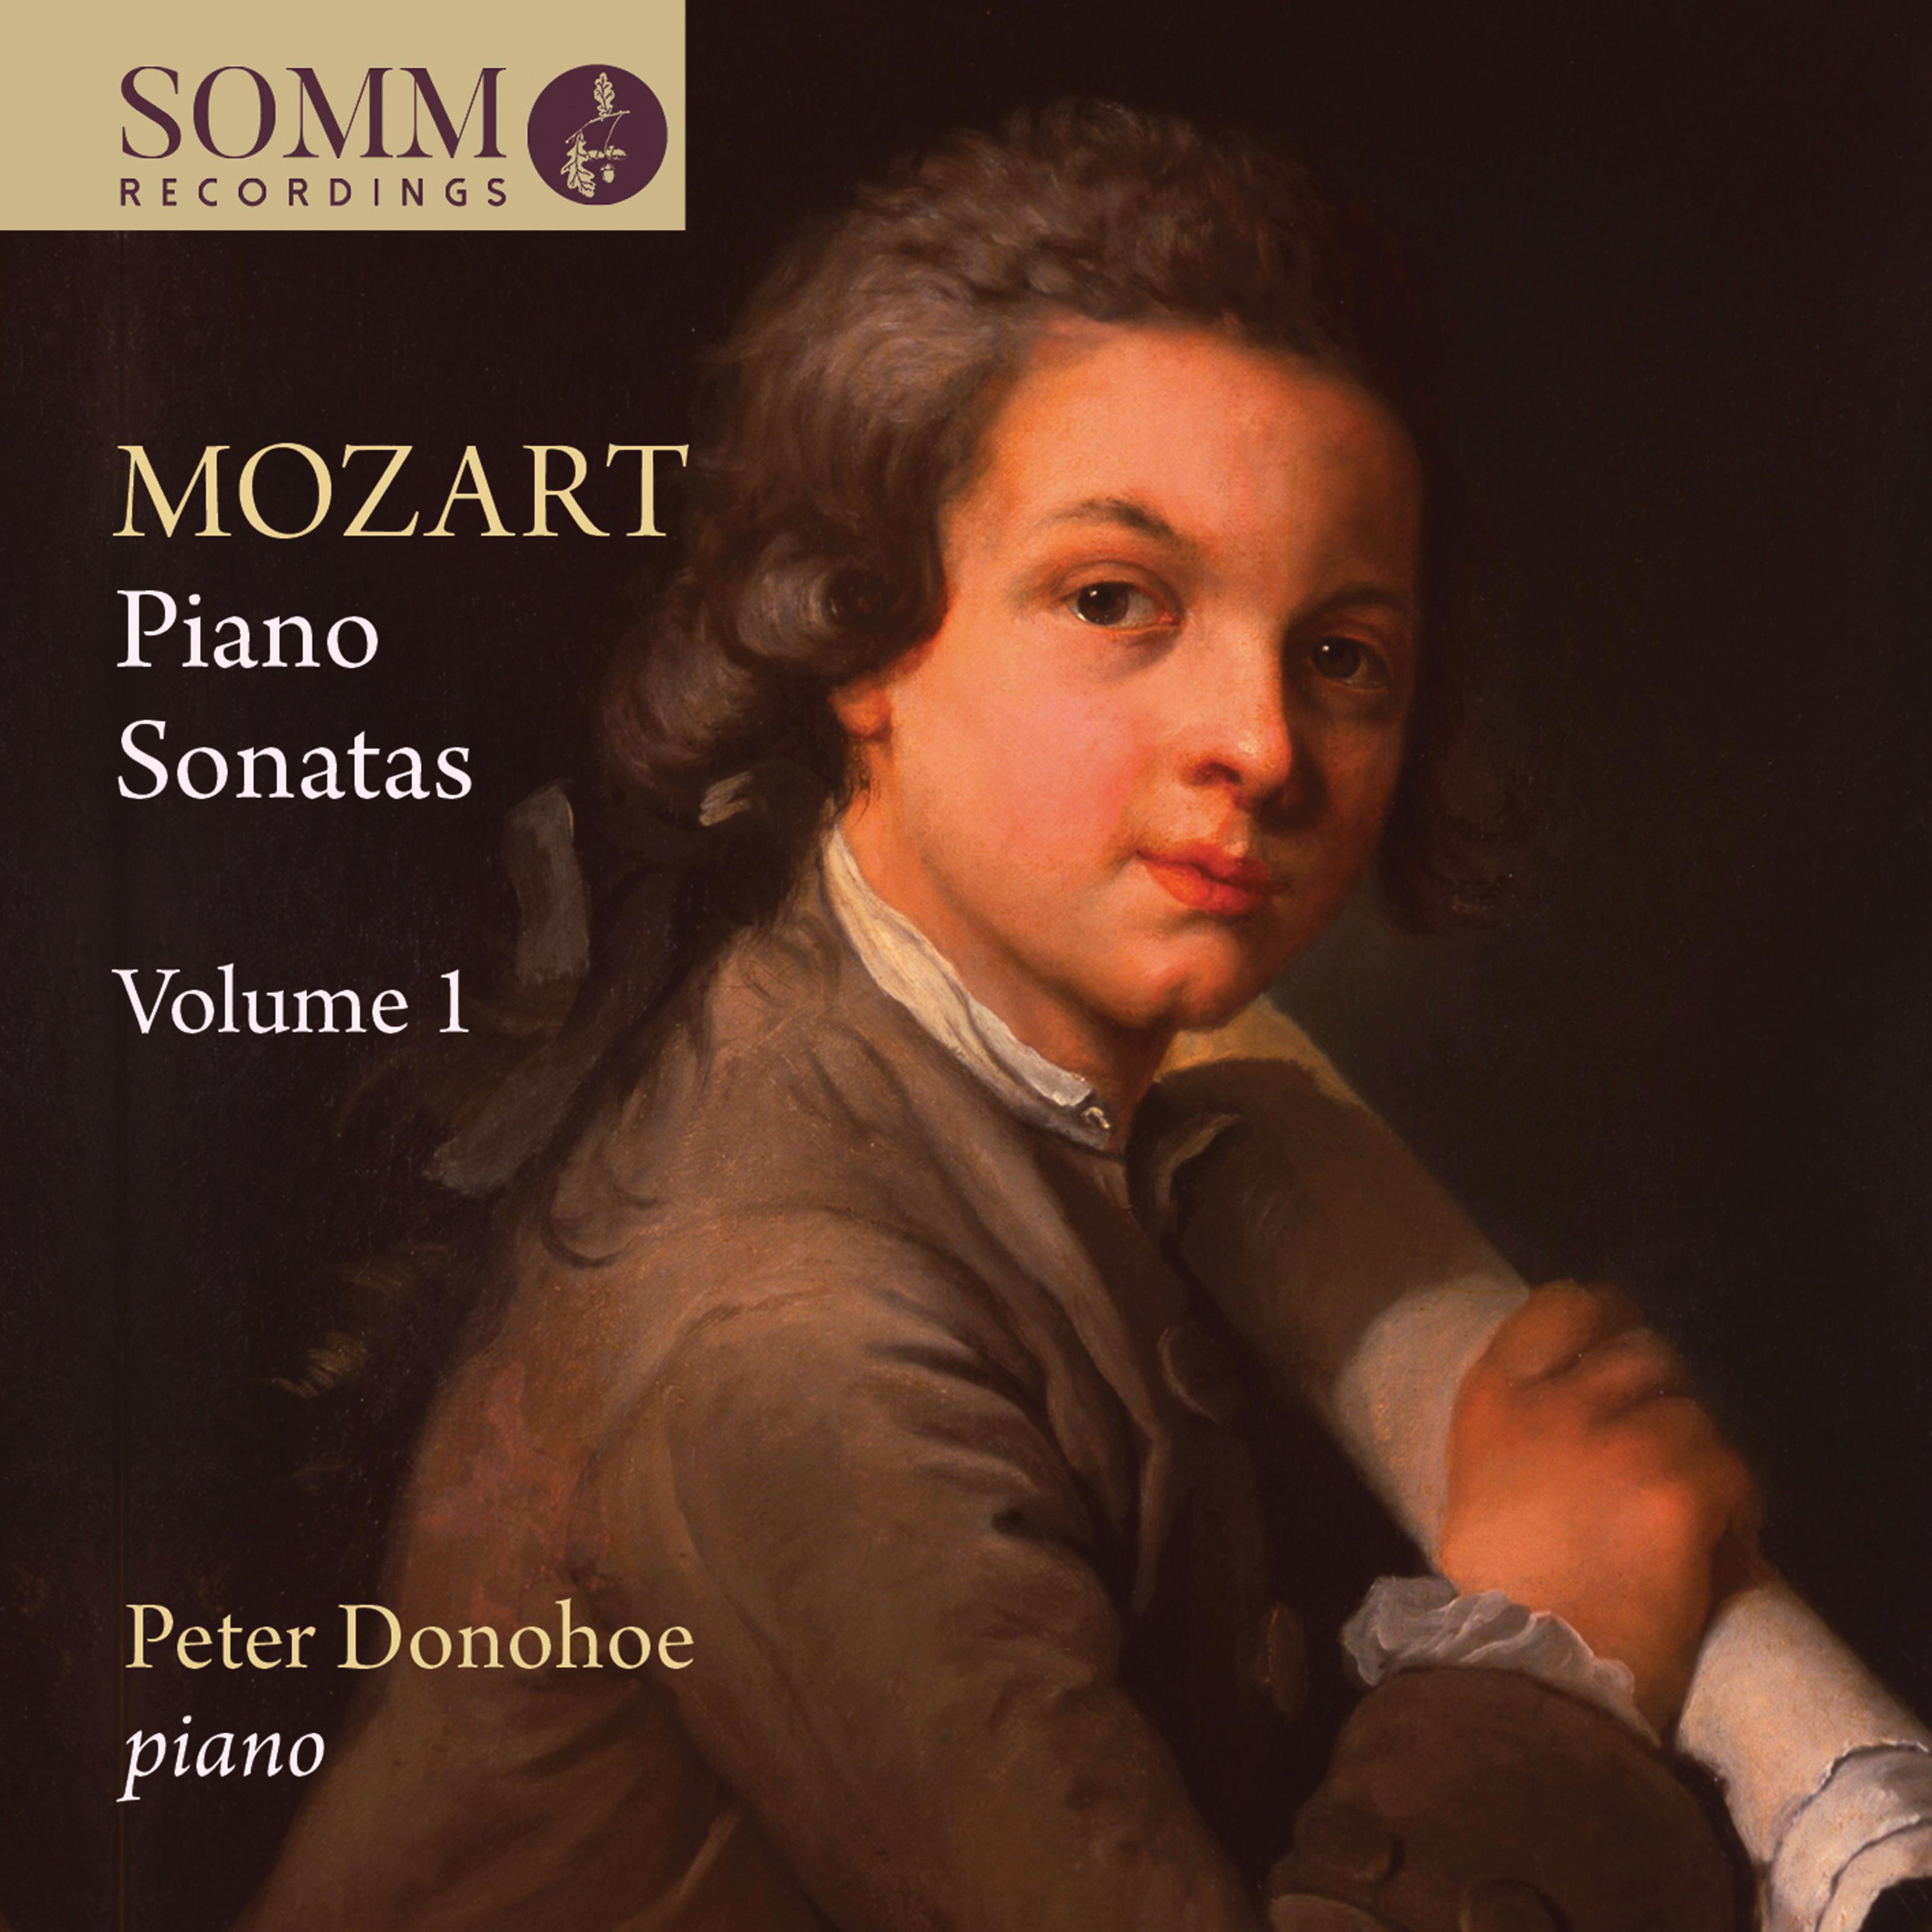 Piano Sonata No. 2 in F Major, K. 280: II. Adagio